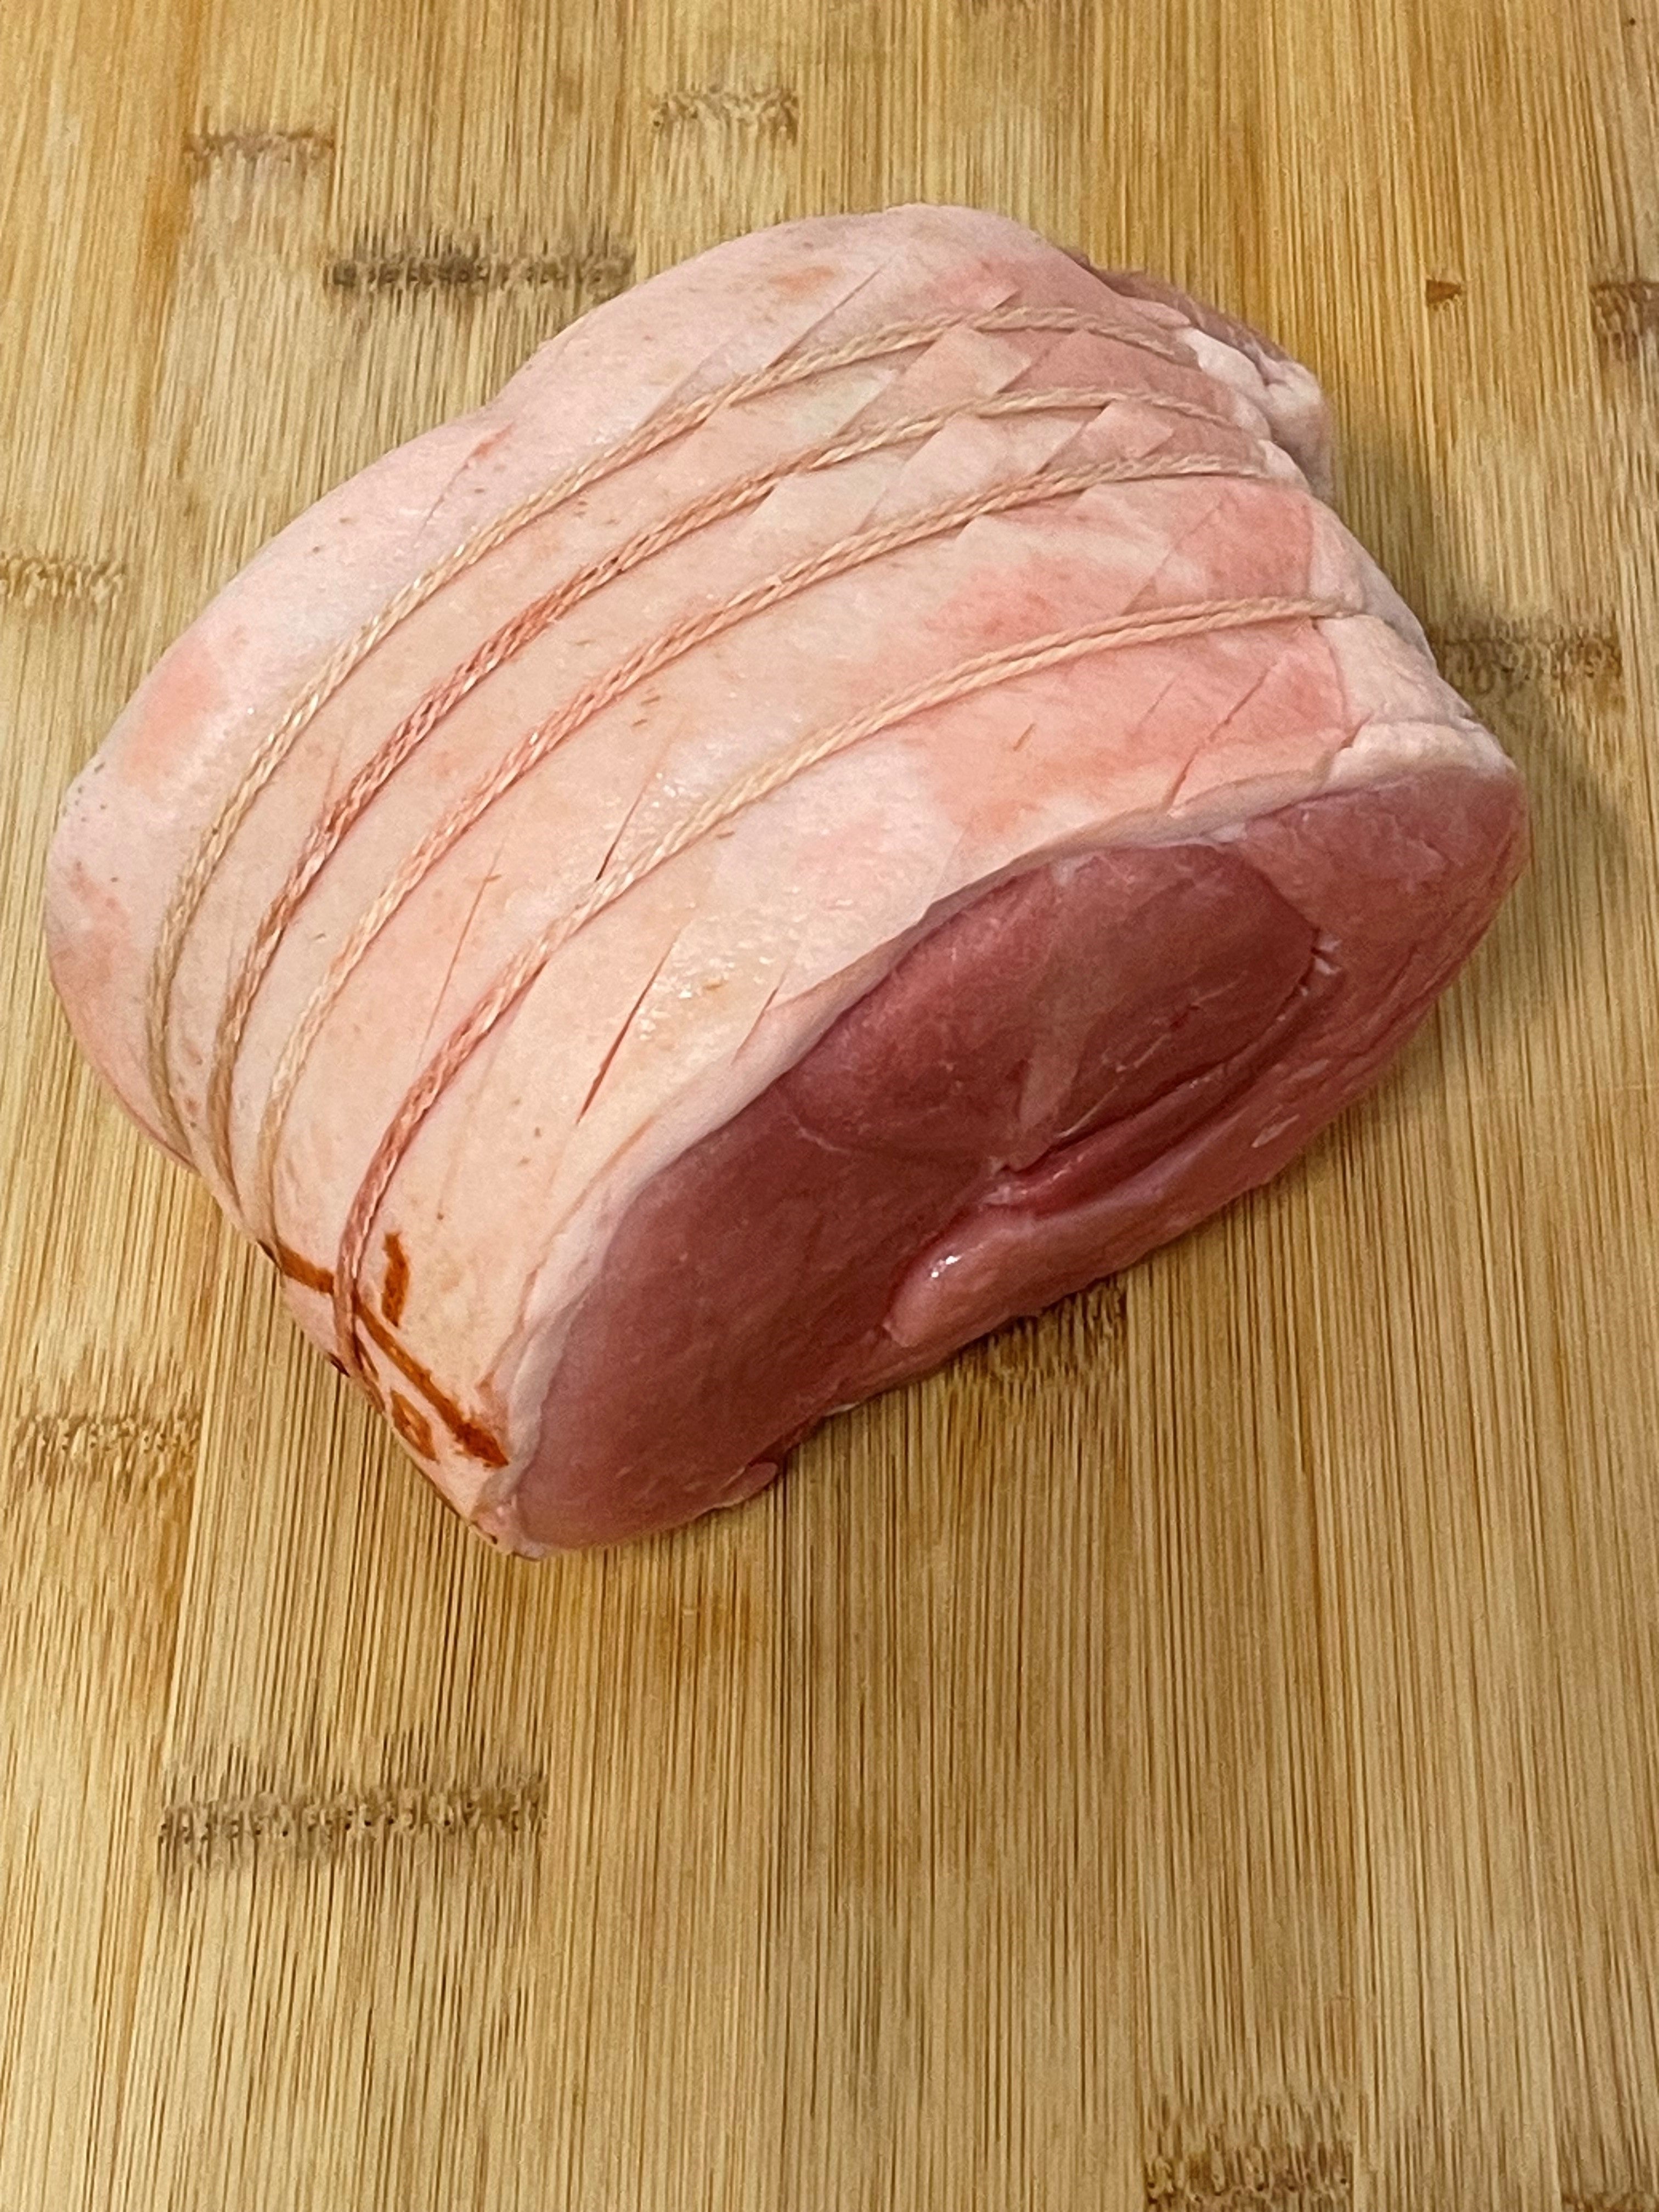 Pork Leg Joint (Boneless) 2 kg